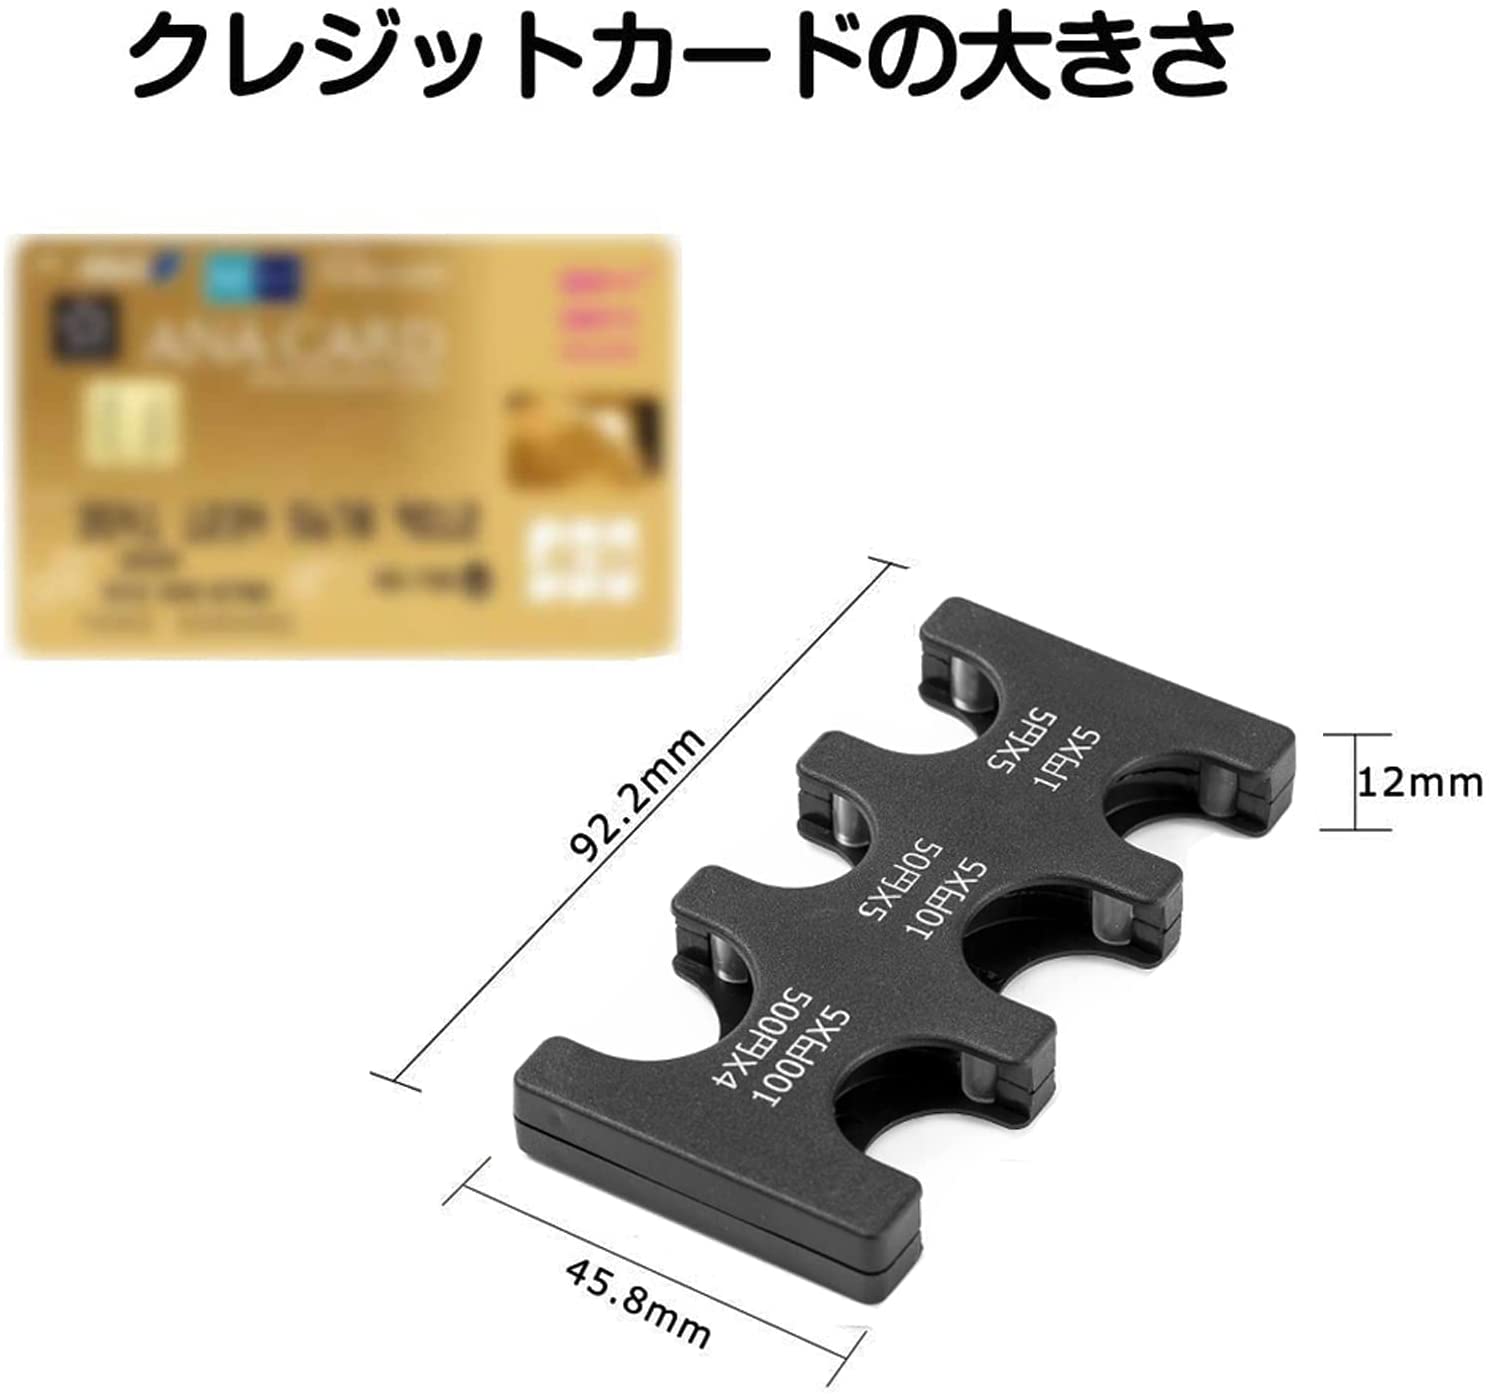 携帯 コインホルダー 硬貨収納 小銭財布 軽量 コンパクト 片手で取り出せ ブラック (ブラック)742219